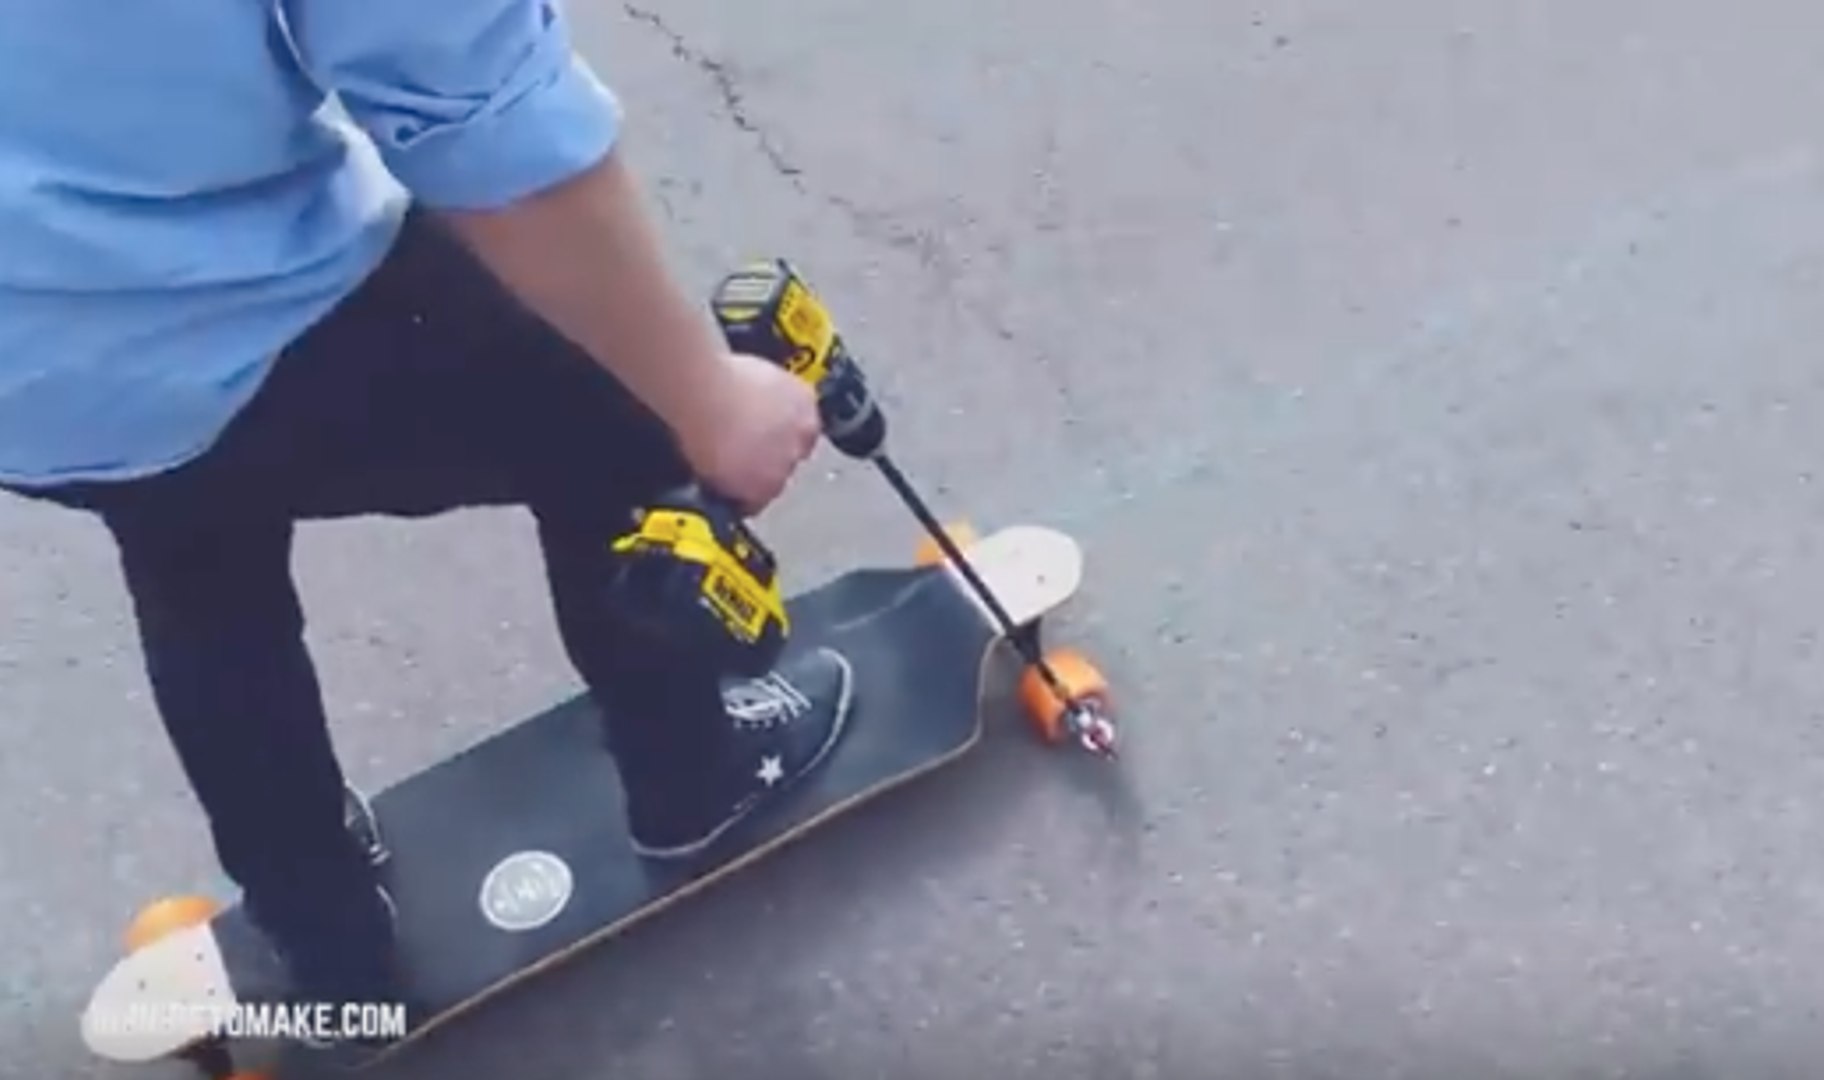 Construire un skateboard électrique avec une perceuse - Vidéo Dailymotion